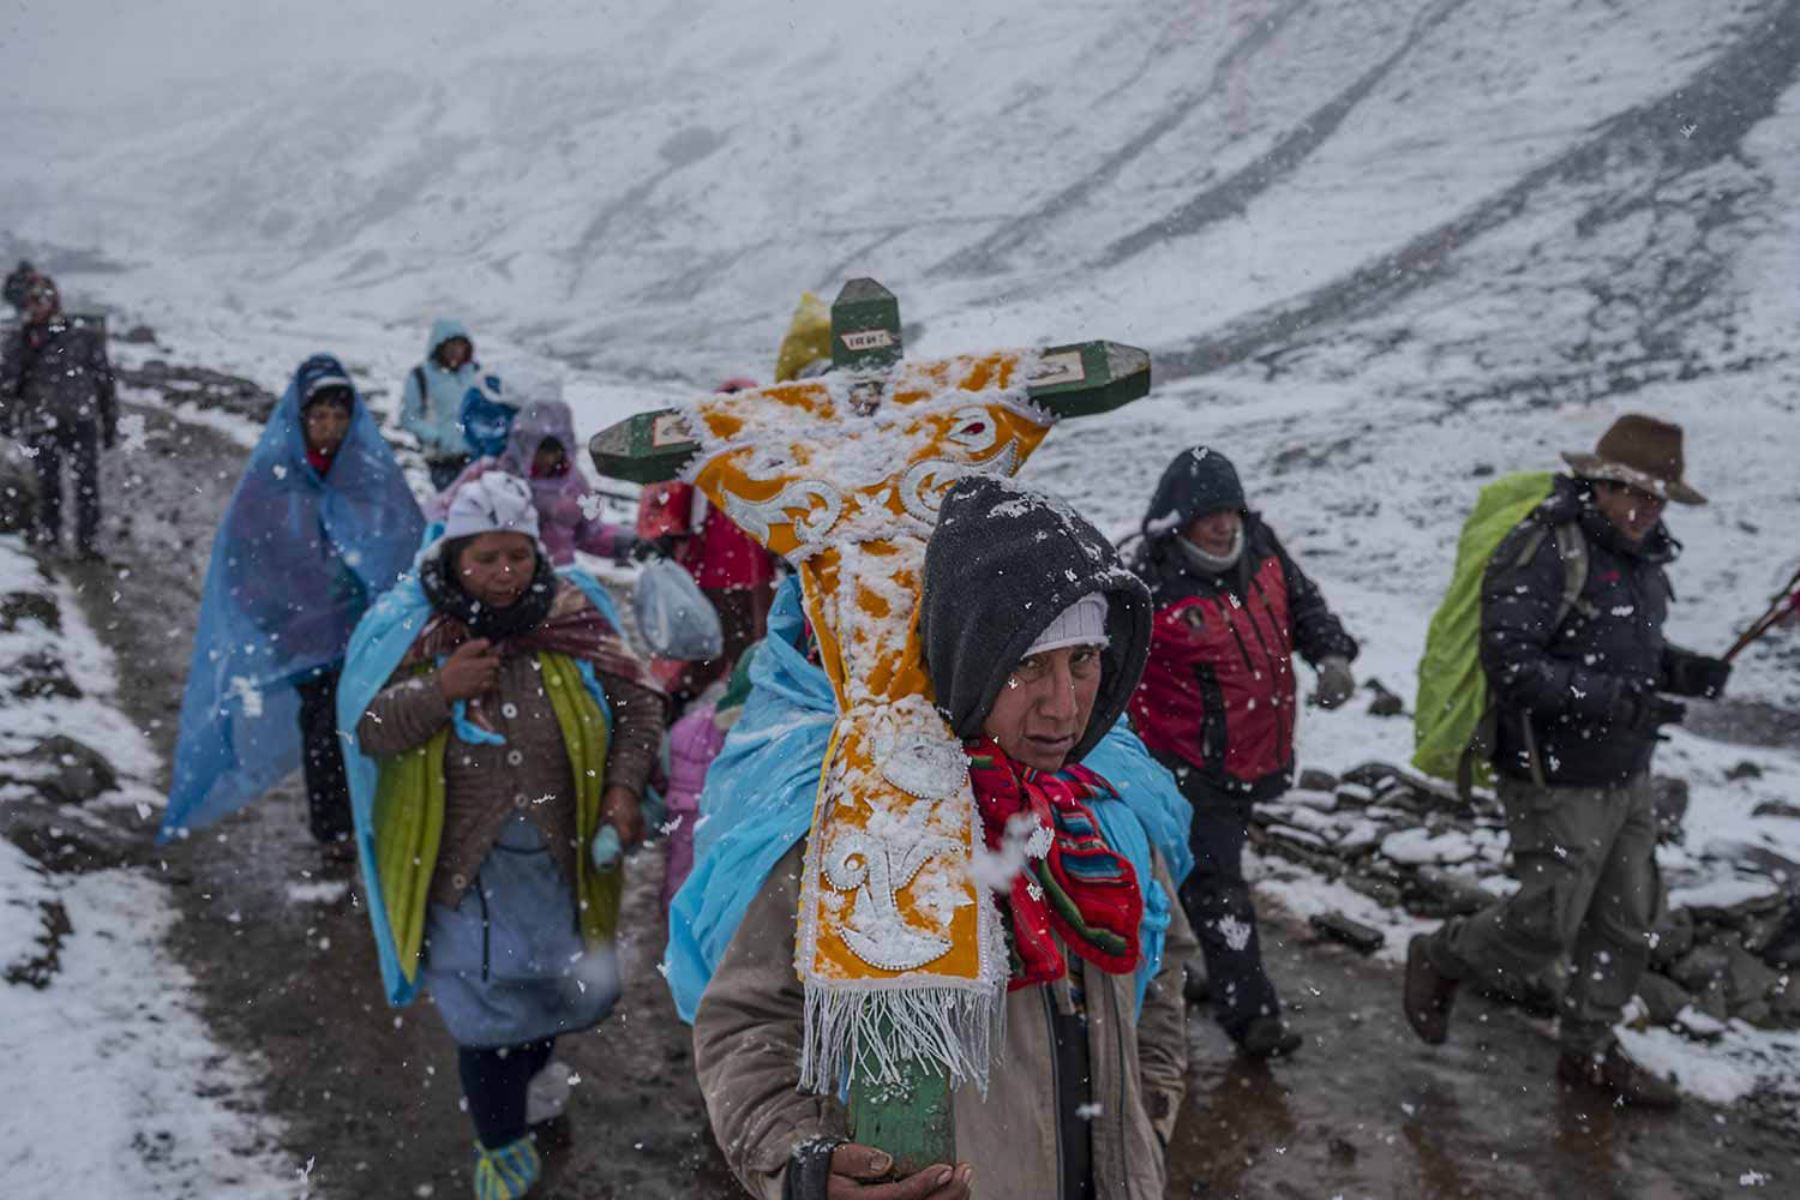 La nieve cae feroz en el Santuario pero ello no impide que los devotos continúen su peregrinaje.Fotografía del libro, Qoyllurit